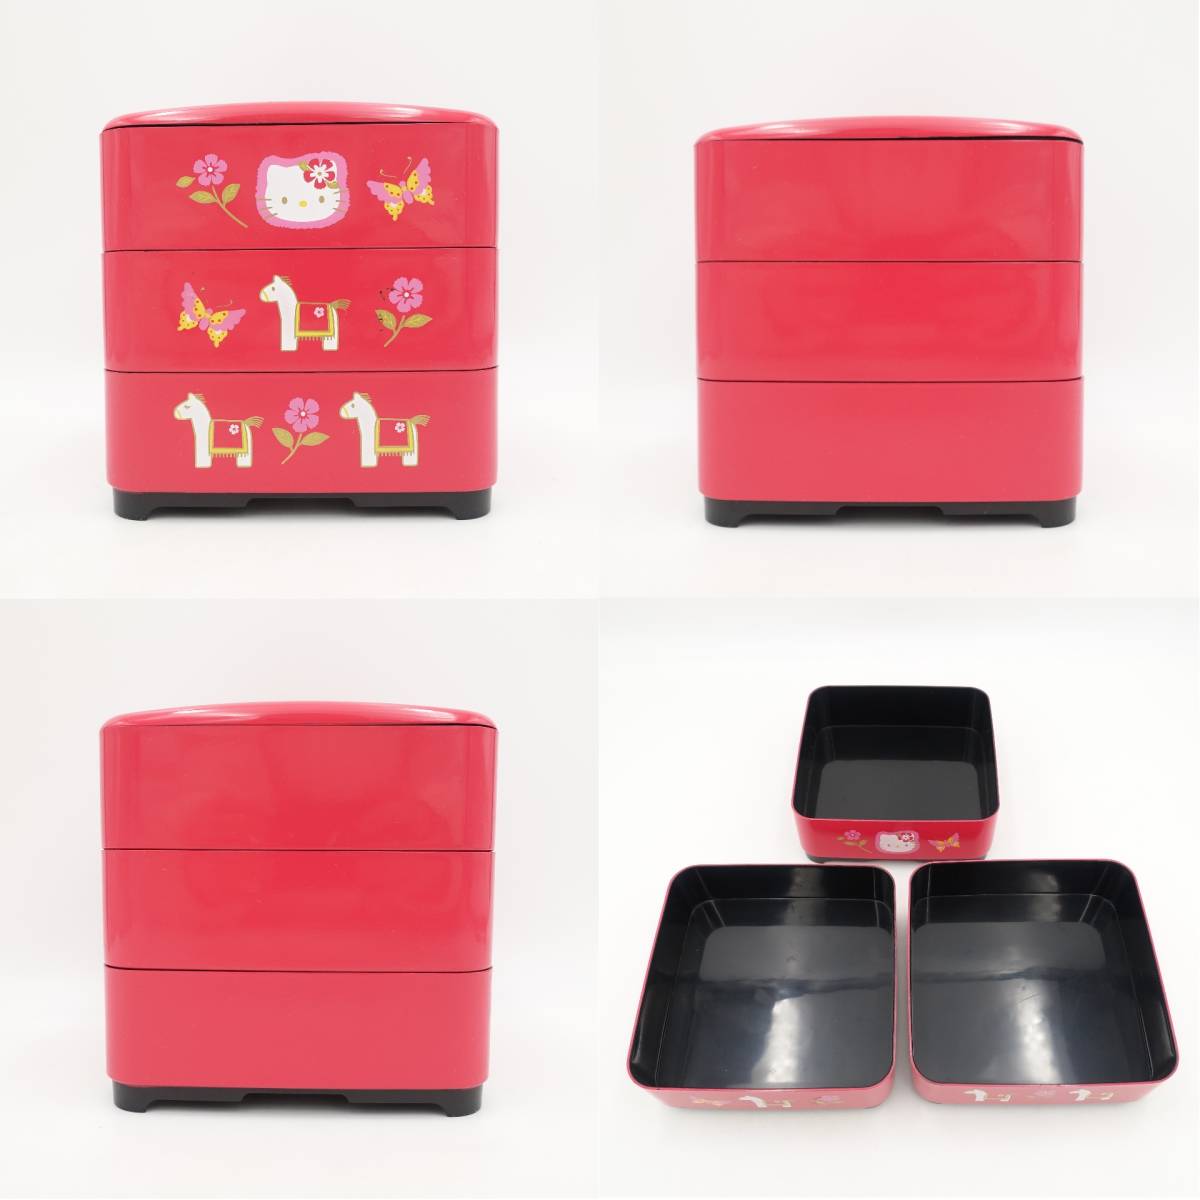 ハローキティ 重箱 2002 3段 赤 ピンク お弁当箱 収納 小物入れ グッズ 2点セット Sanrio サンリオ/13286_画像7